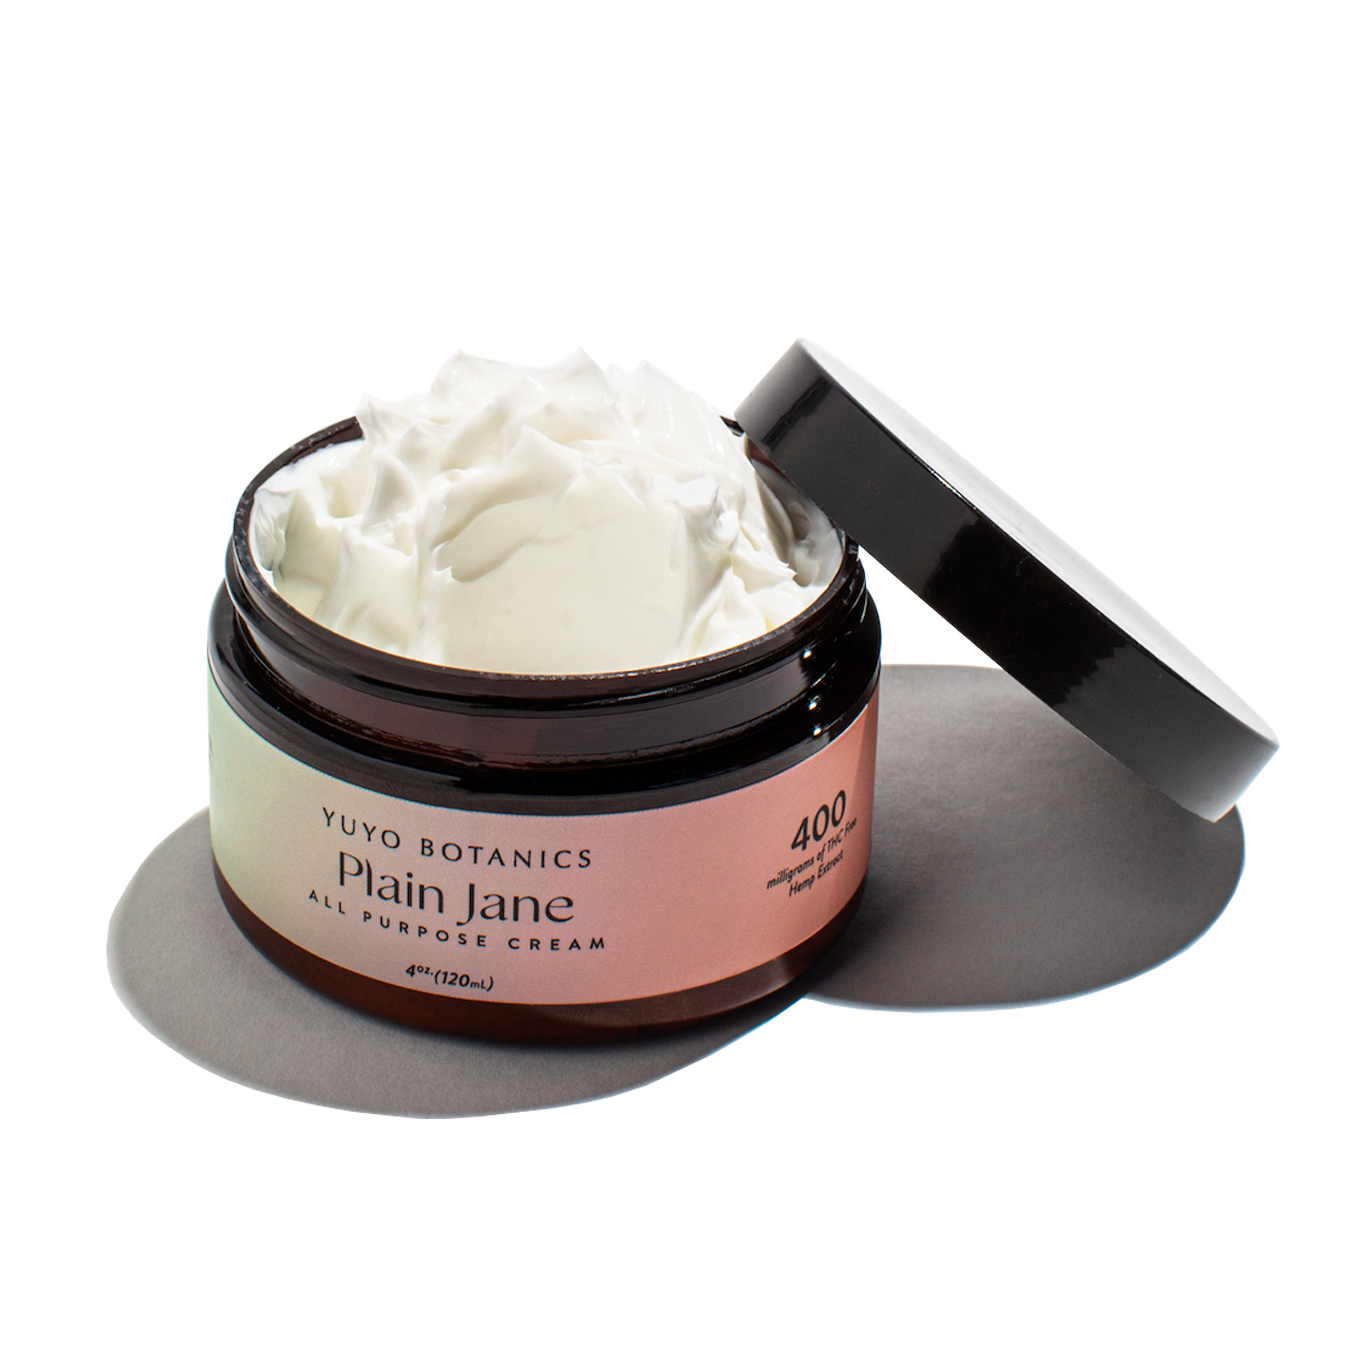 The Plain Jane All-Purpose Cream – Yuyo Botanics